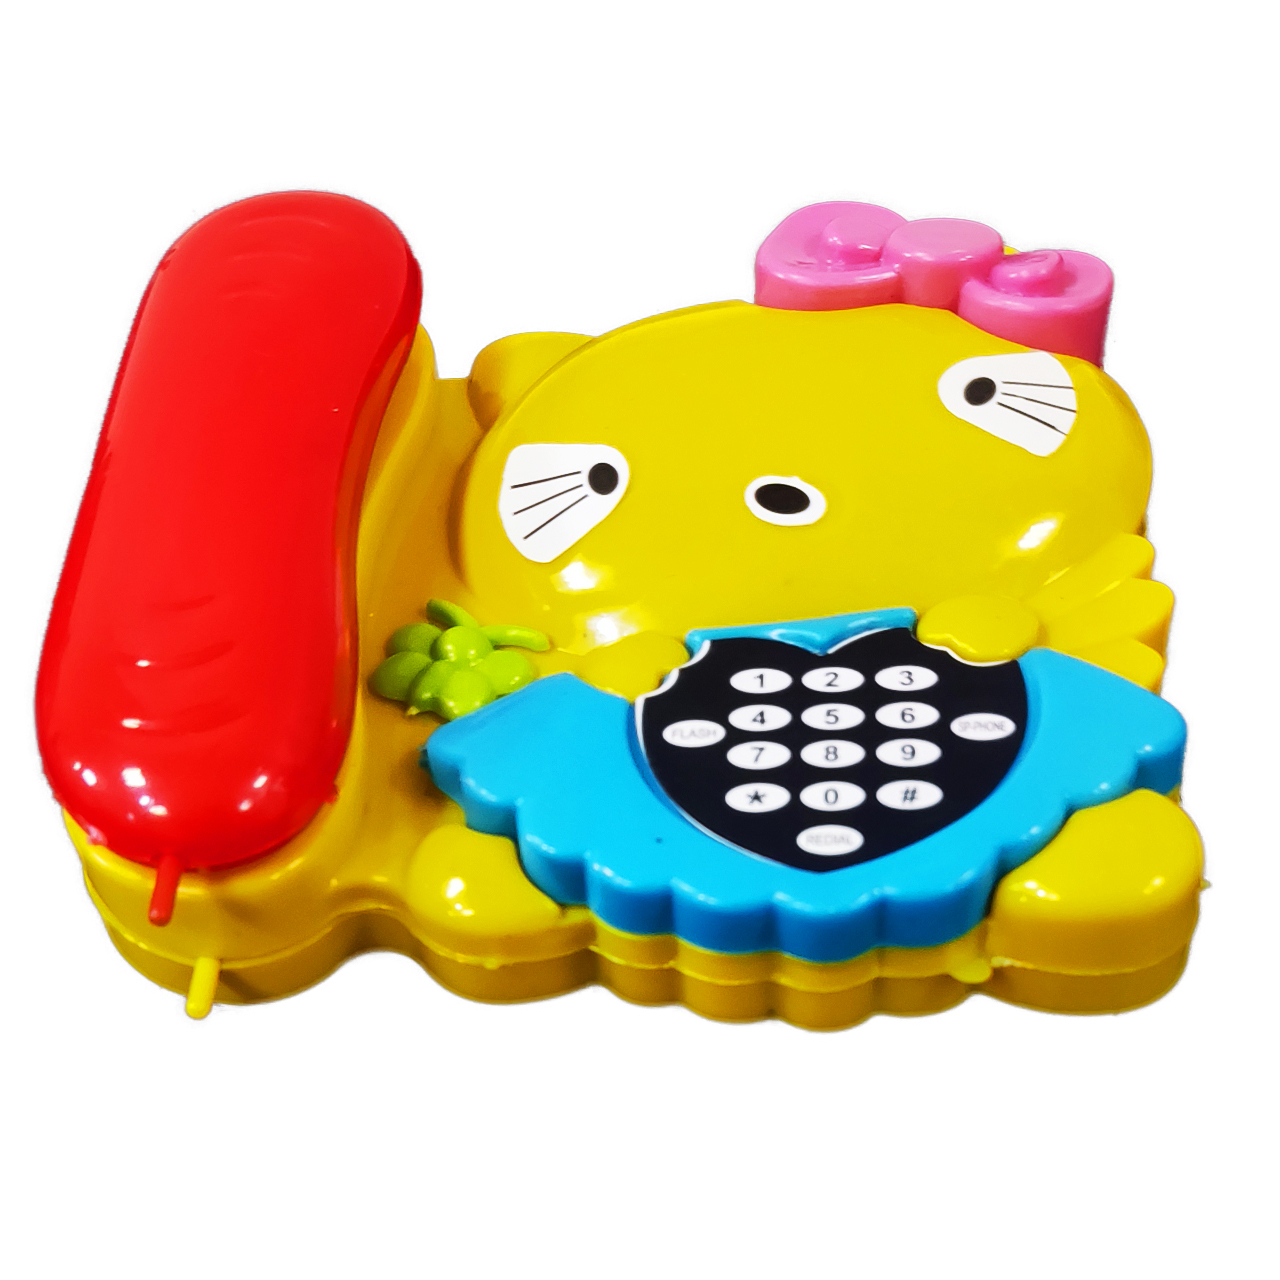 اسباب بازی مدل تلفن کیتی کد 9856 -  - 3